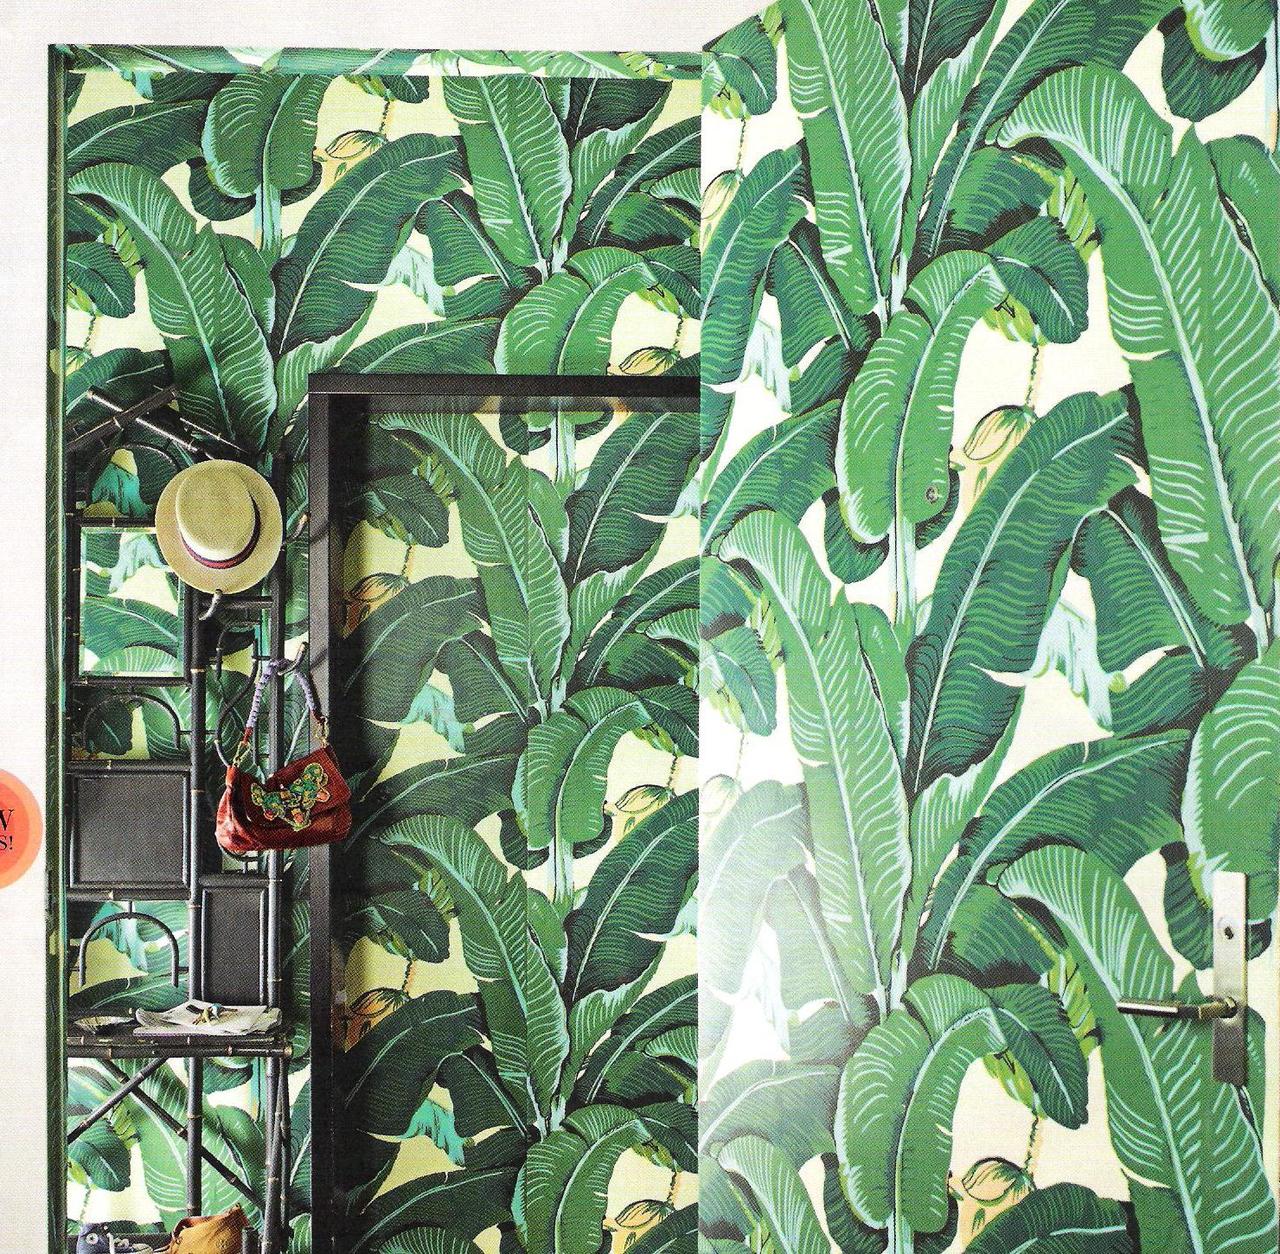  de jungle met het Martinique Banana Leaf wallpaper van Hinson   Roomed 1280x1254